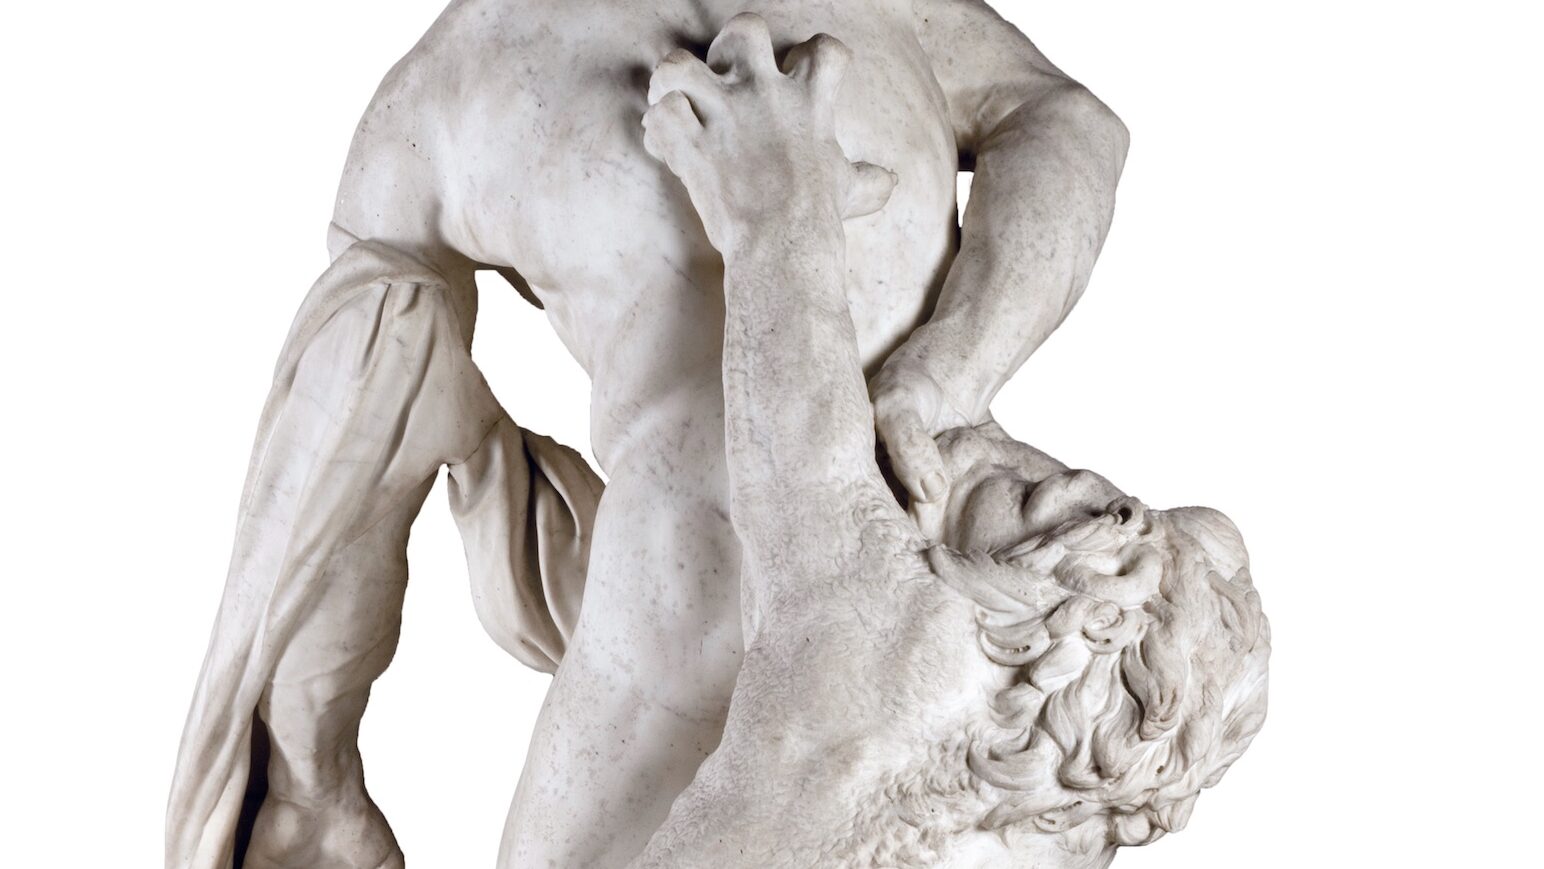 Pierre Puget (1620-1694), Milon de Crotone (détail), 1671‑1682. Marbre de Carrare, 270 x 140 x 91 cm. Paris, département des Sculptures du musée du Louvre. © Musée du Louvre, dist. RMN – P. Fuzeau